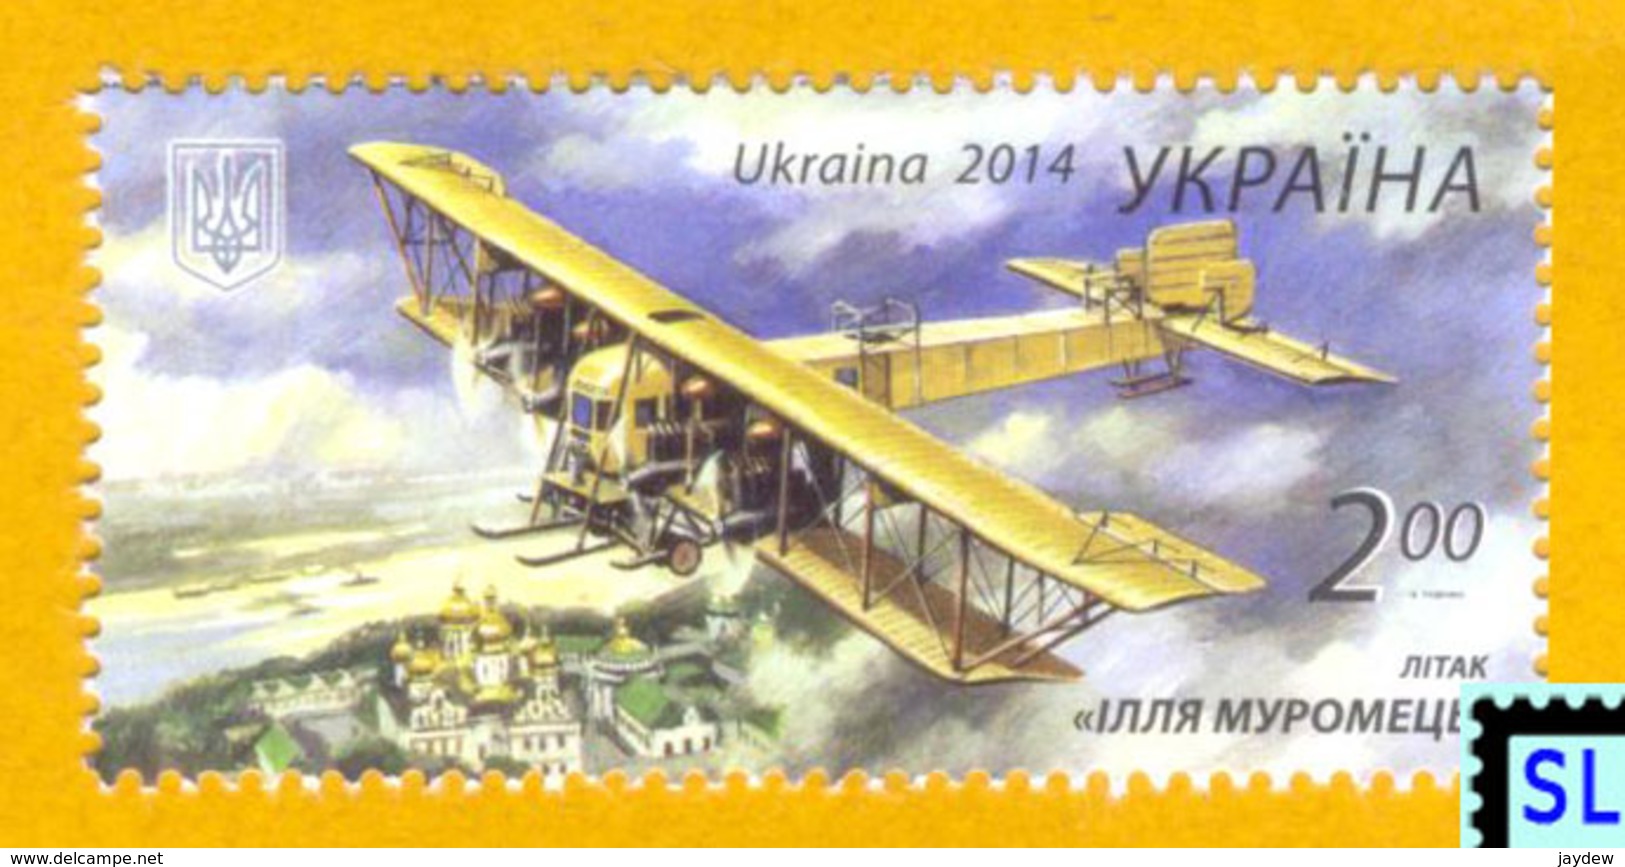 Ukraine Stamps 2014, Ilya Muromets Airplane, MNH - Ukraine